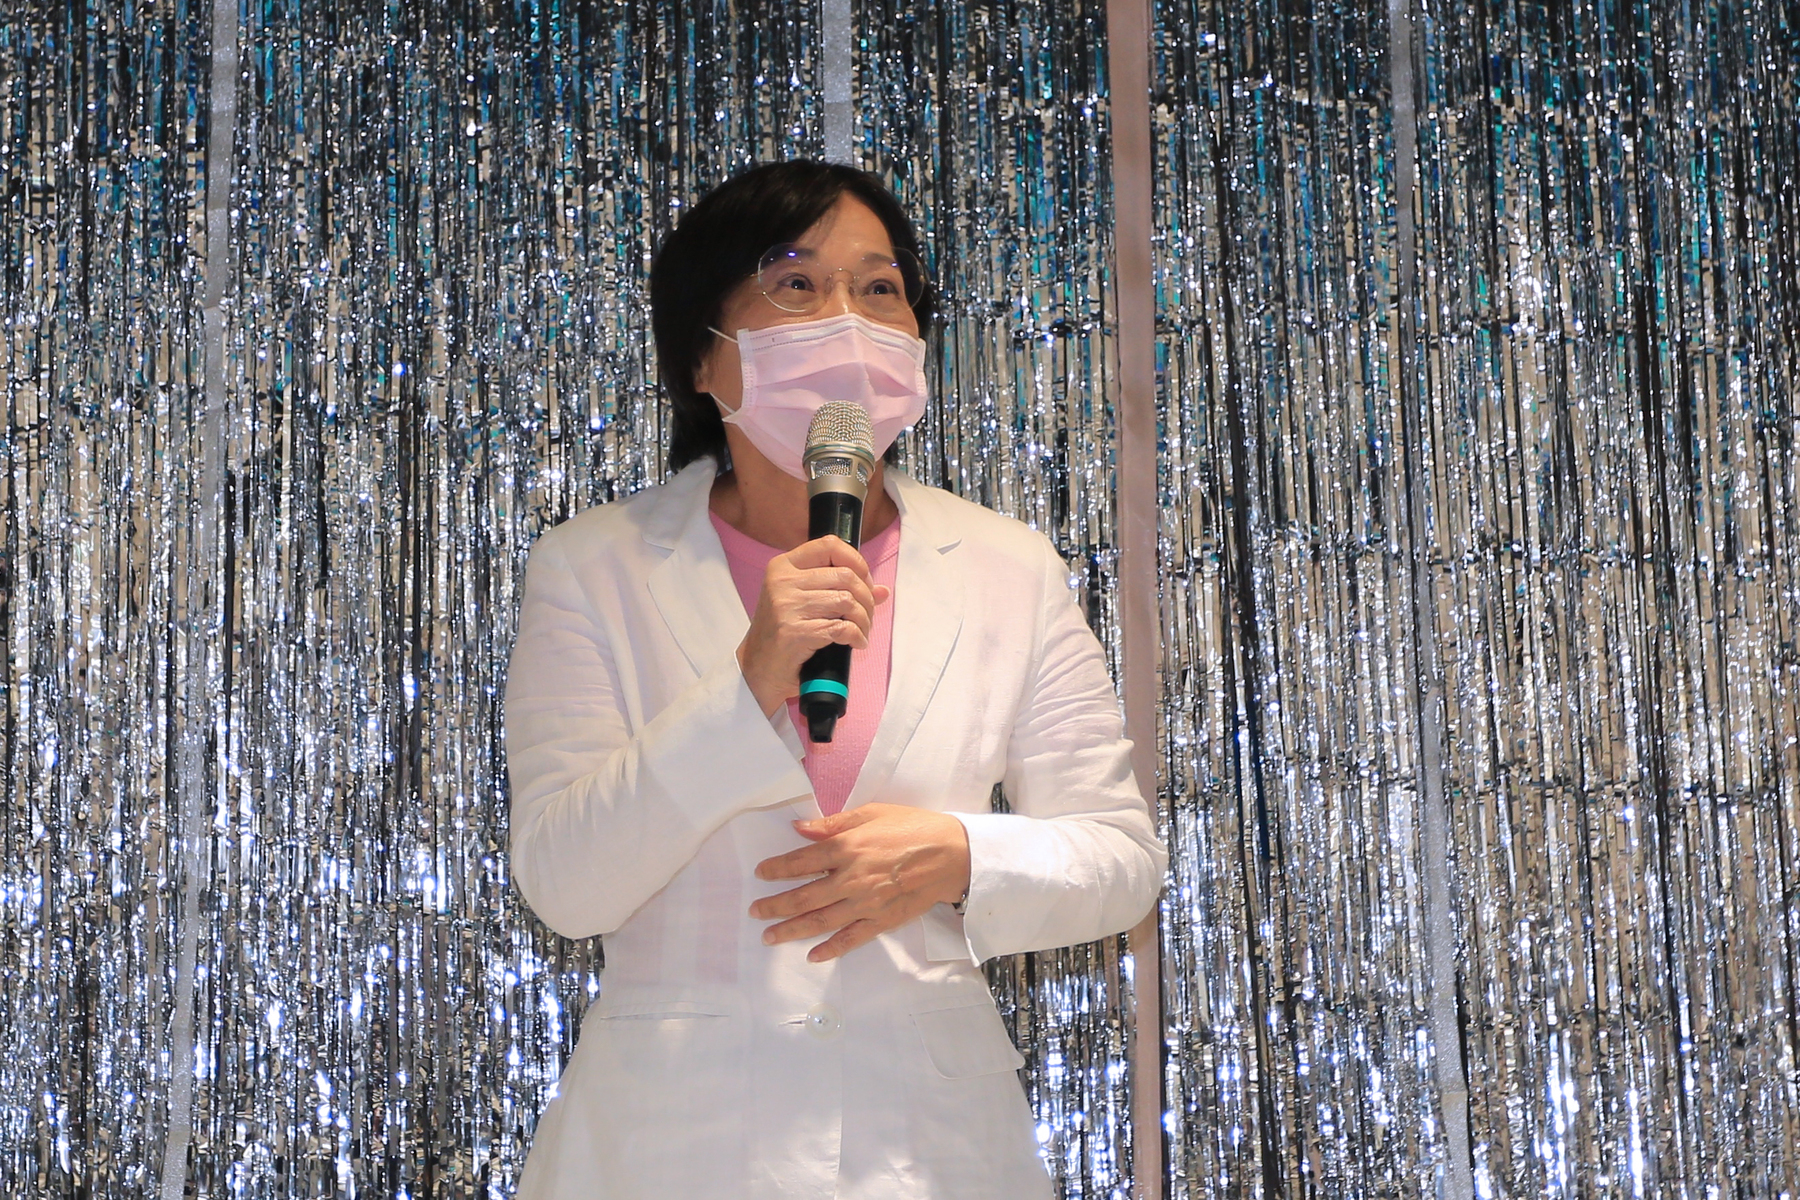 Shyh-Fang Liu, a member of the Legislative Yuan, presented her greetings.